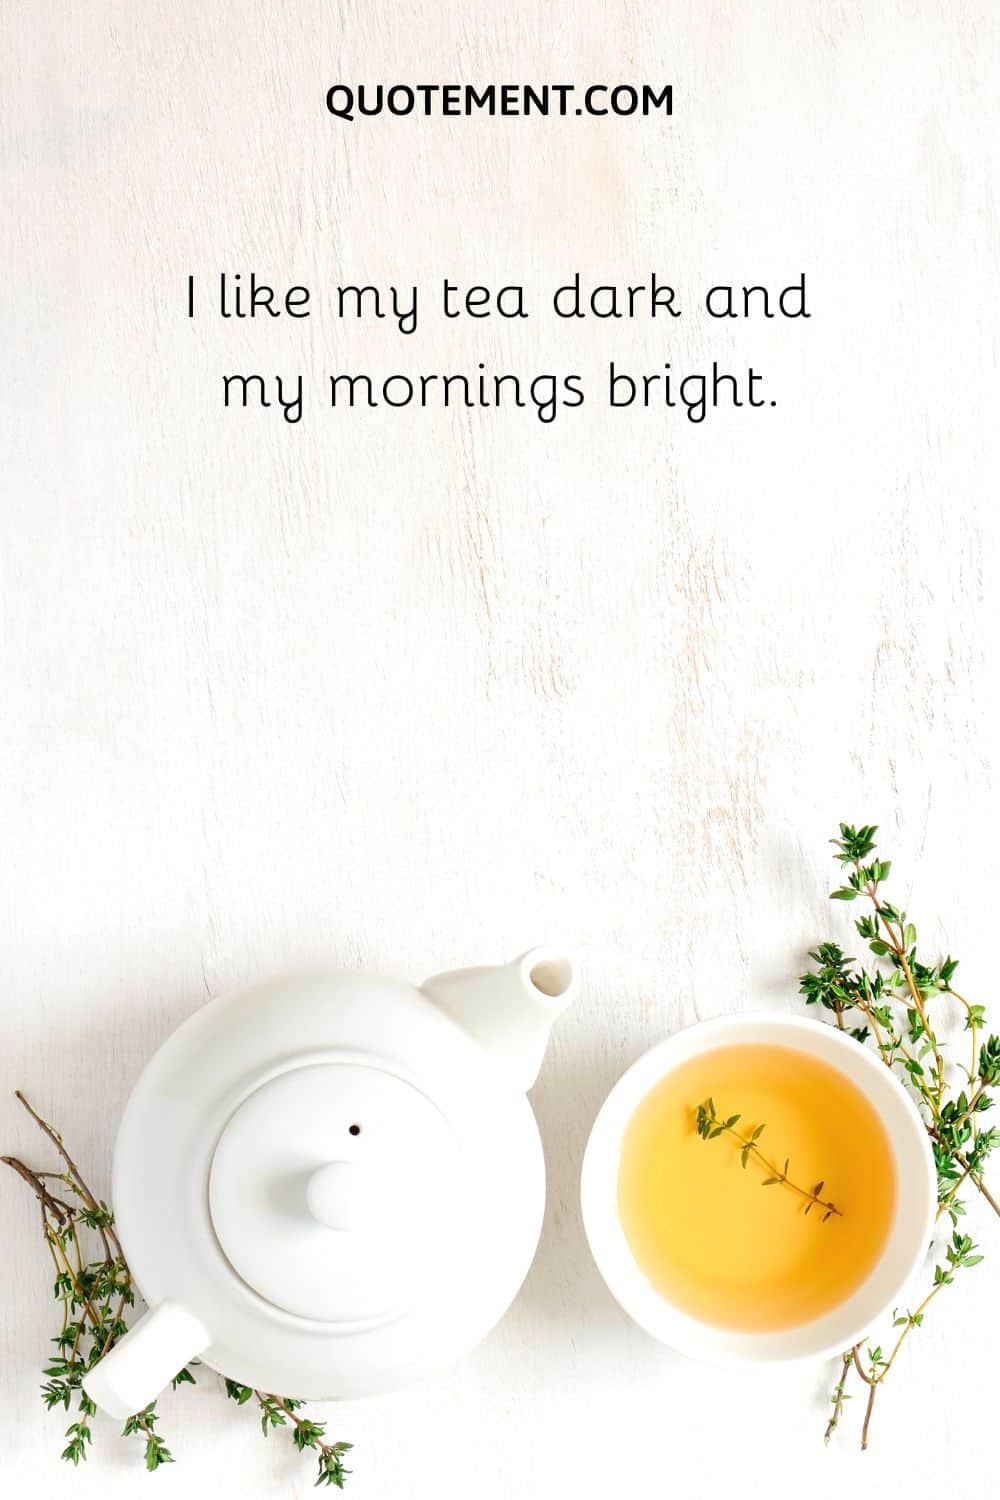 I like my tea dark and my mornings bright.